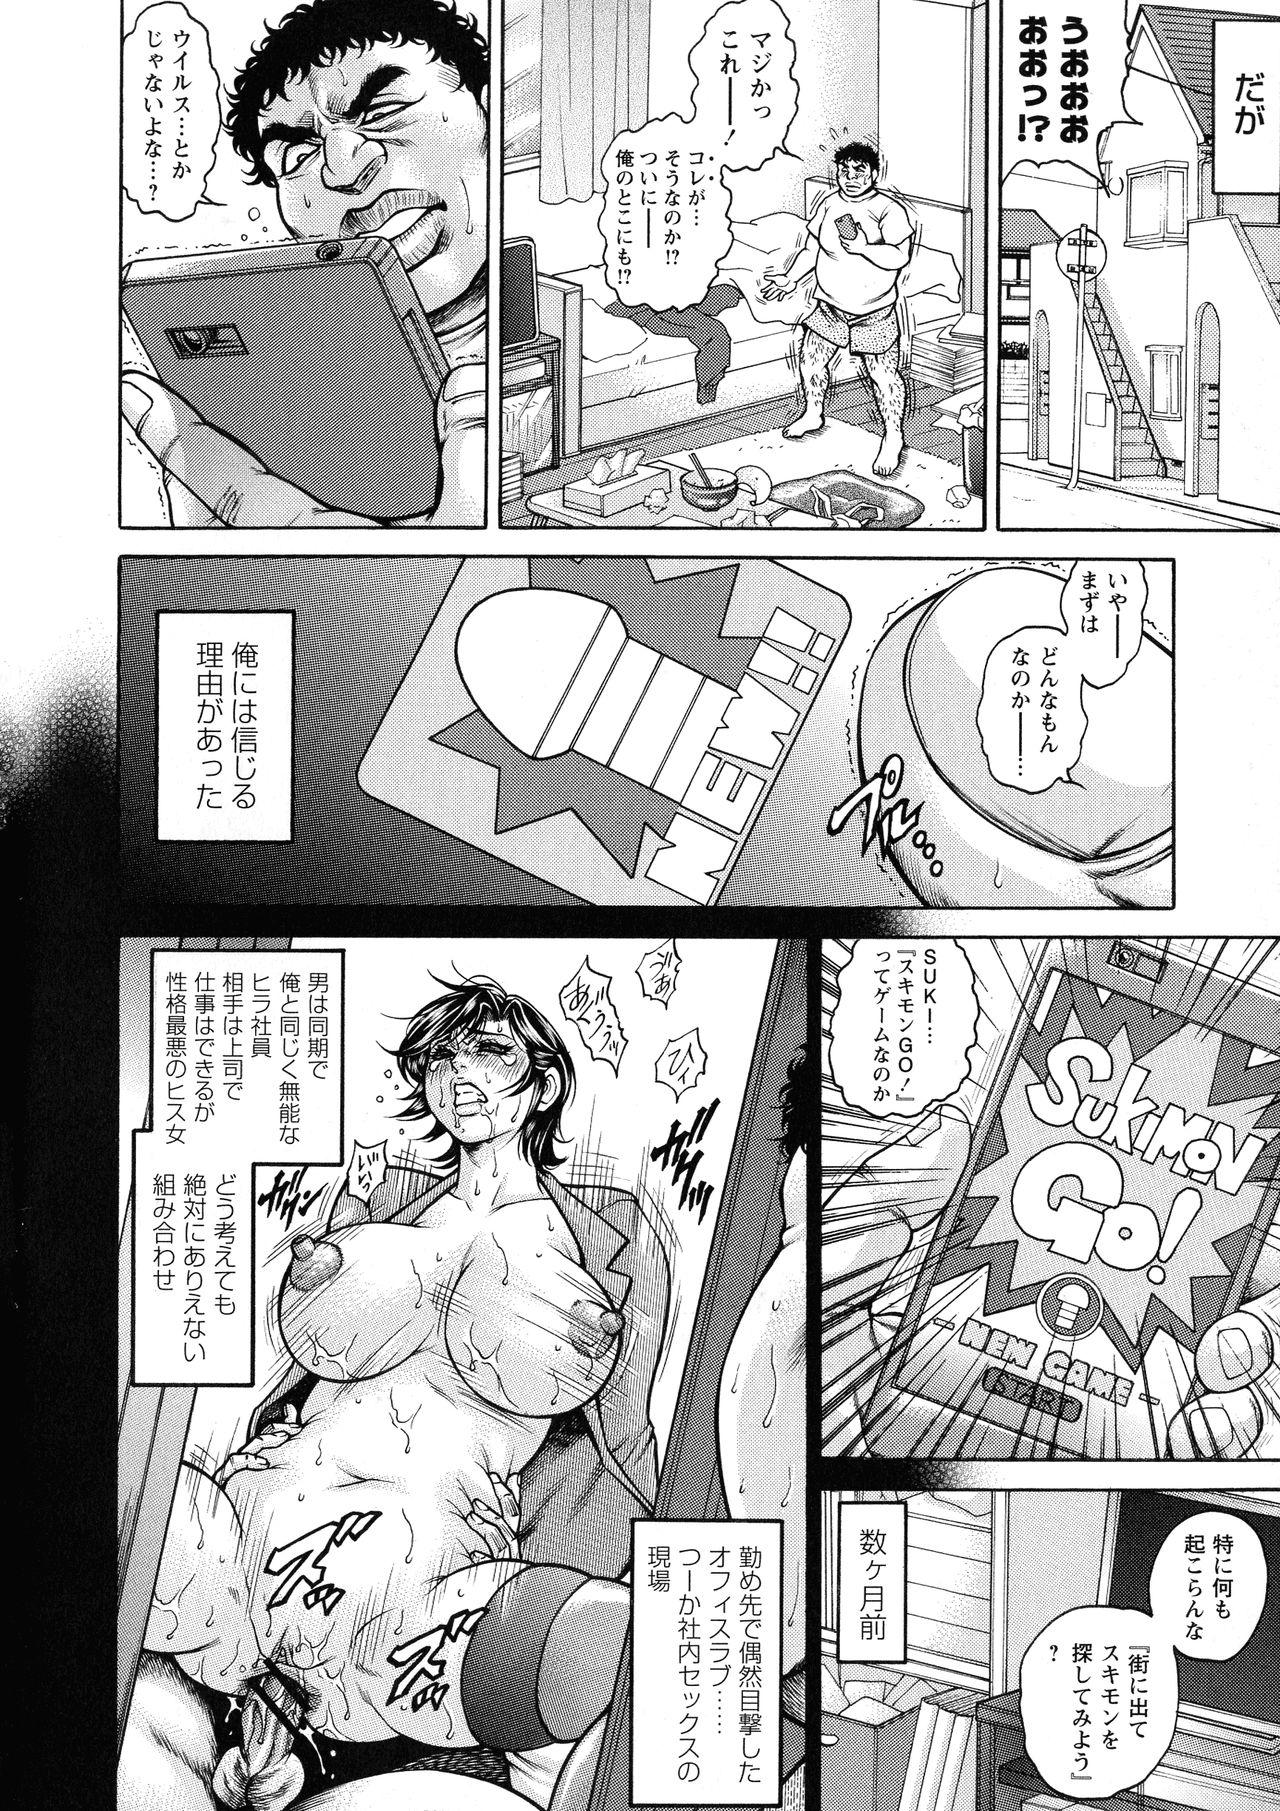 [Hino Toshiyuki] Zetsubou Heroine Mugen Jigoku -- Despair Heroine in Infinite Sex Hell 125